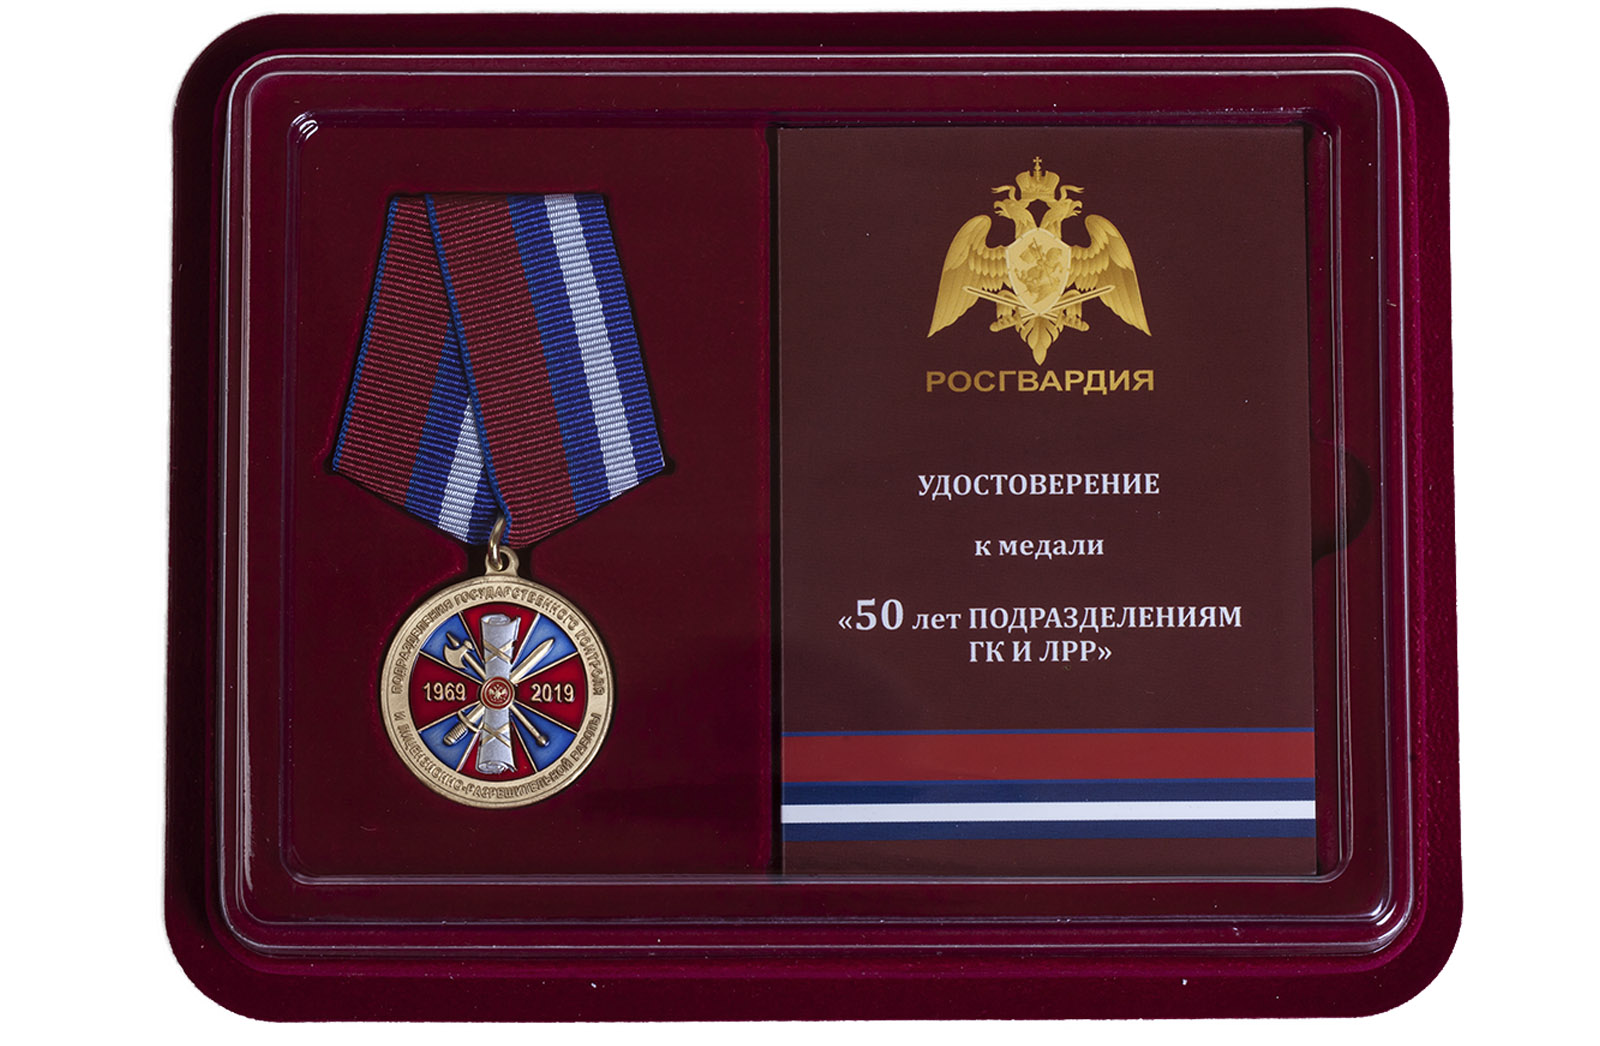 Купить медаль Росгвардии 50 лет подразделениям ГК и ЛРР в подарок мужчине